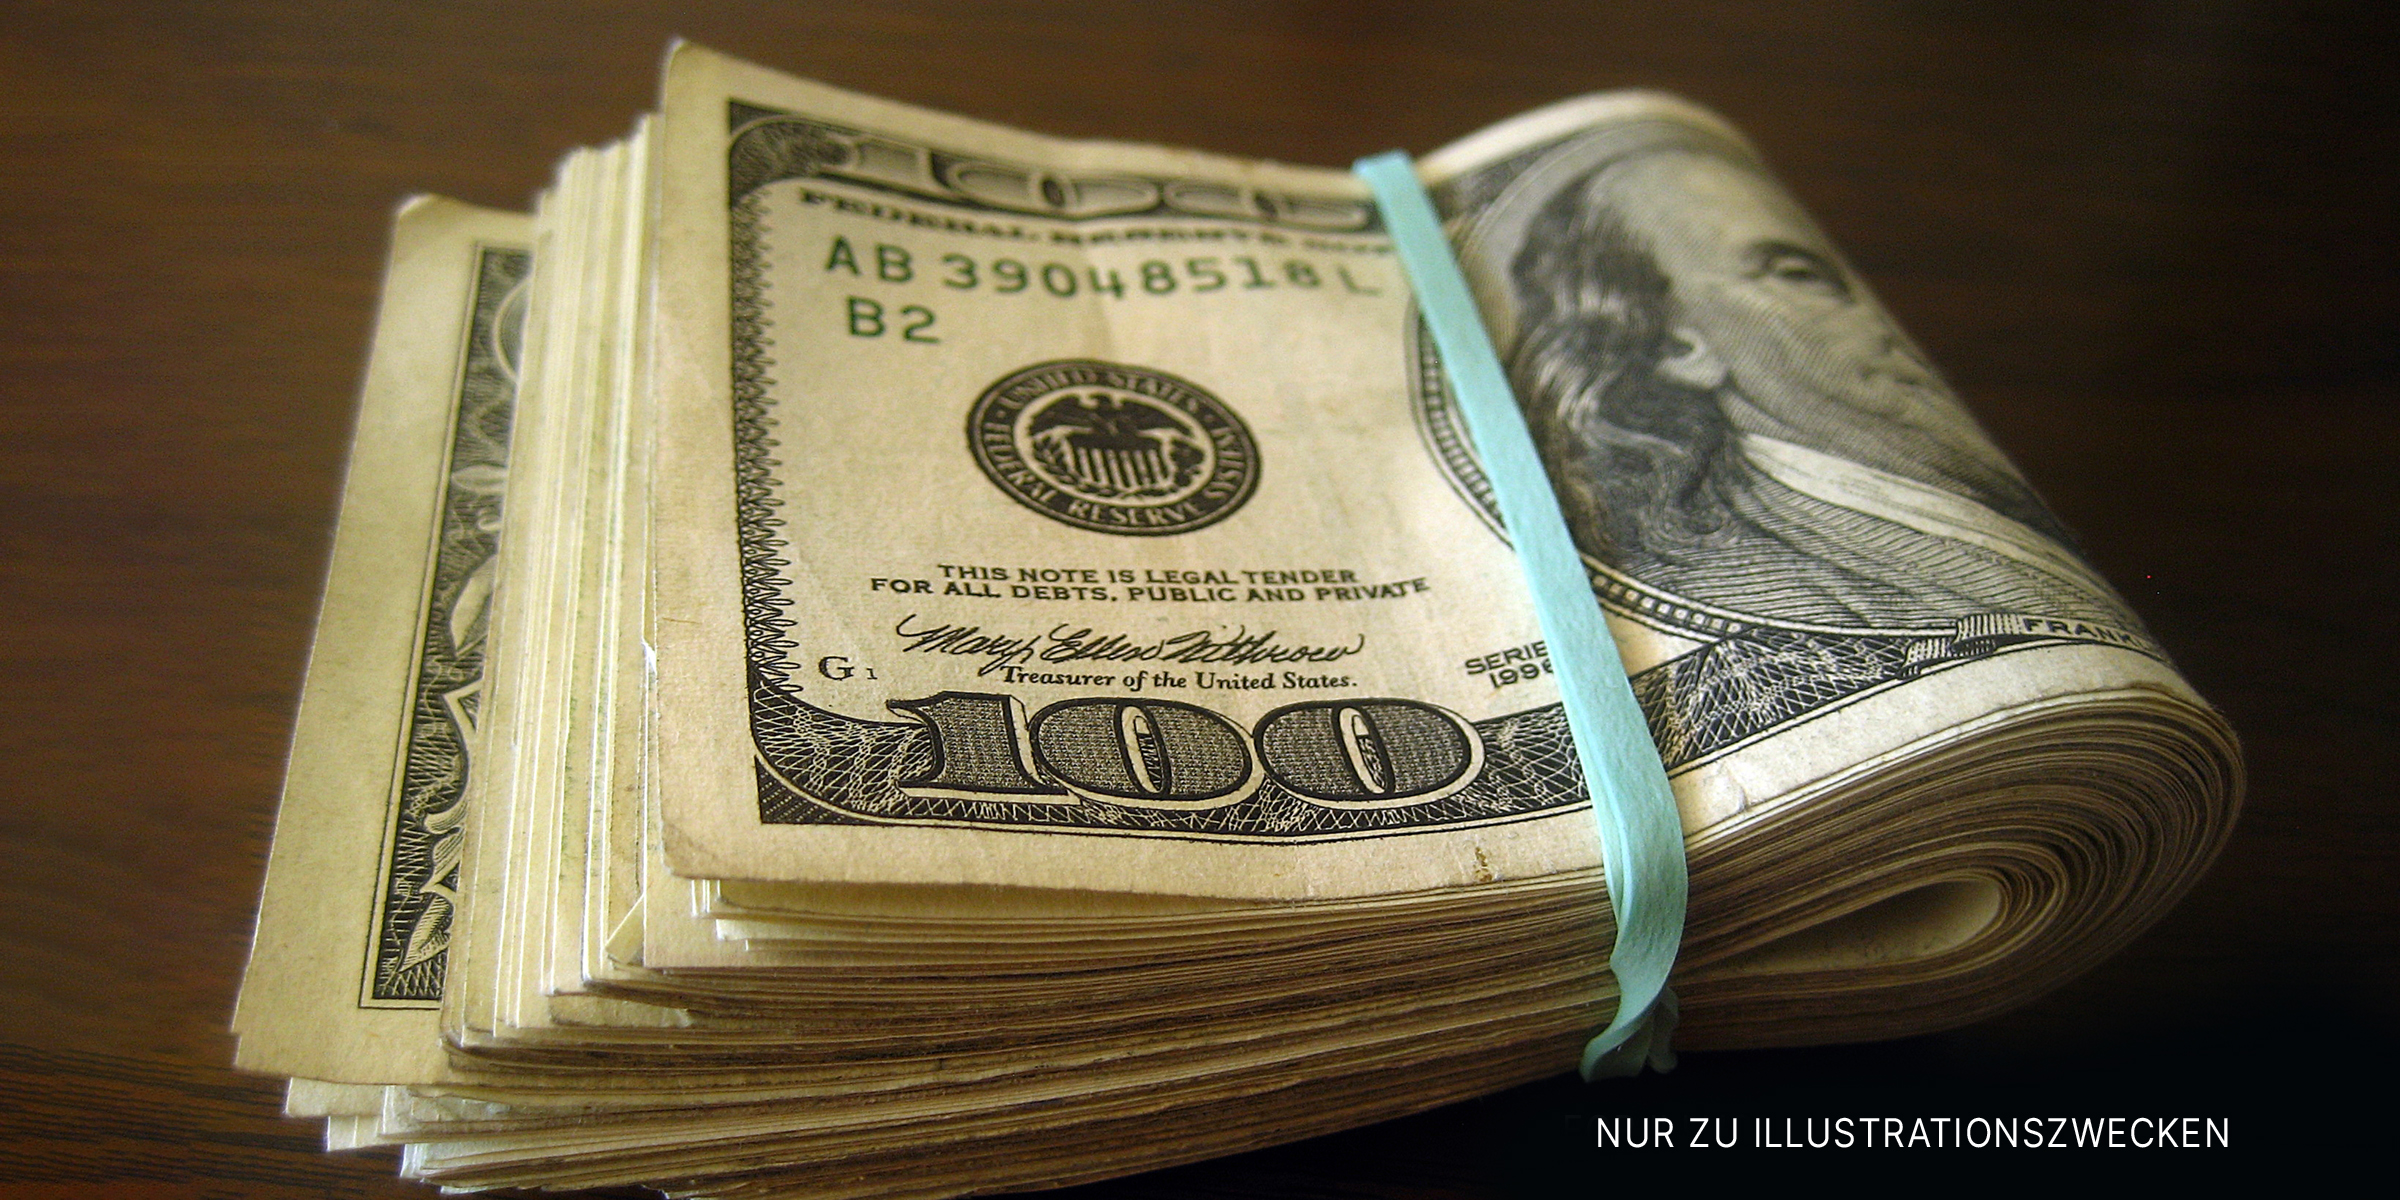 Gefalteter Stapel von Hundertdollarscheinen, die mit einem Gummiband gesichert sind | Quelle: Flickr / 401(K) 2013 (CC BY-SA 2.0)